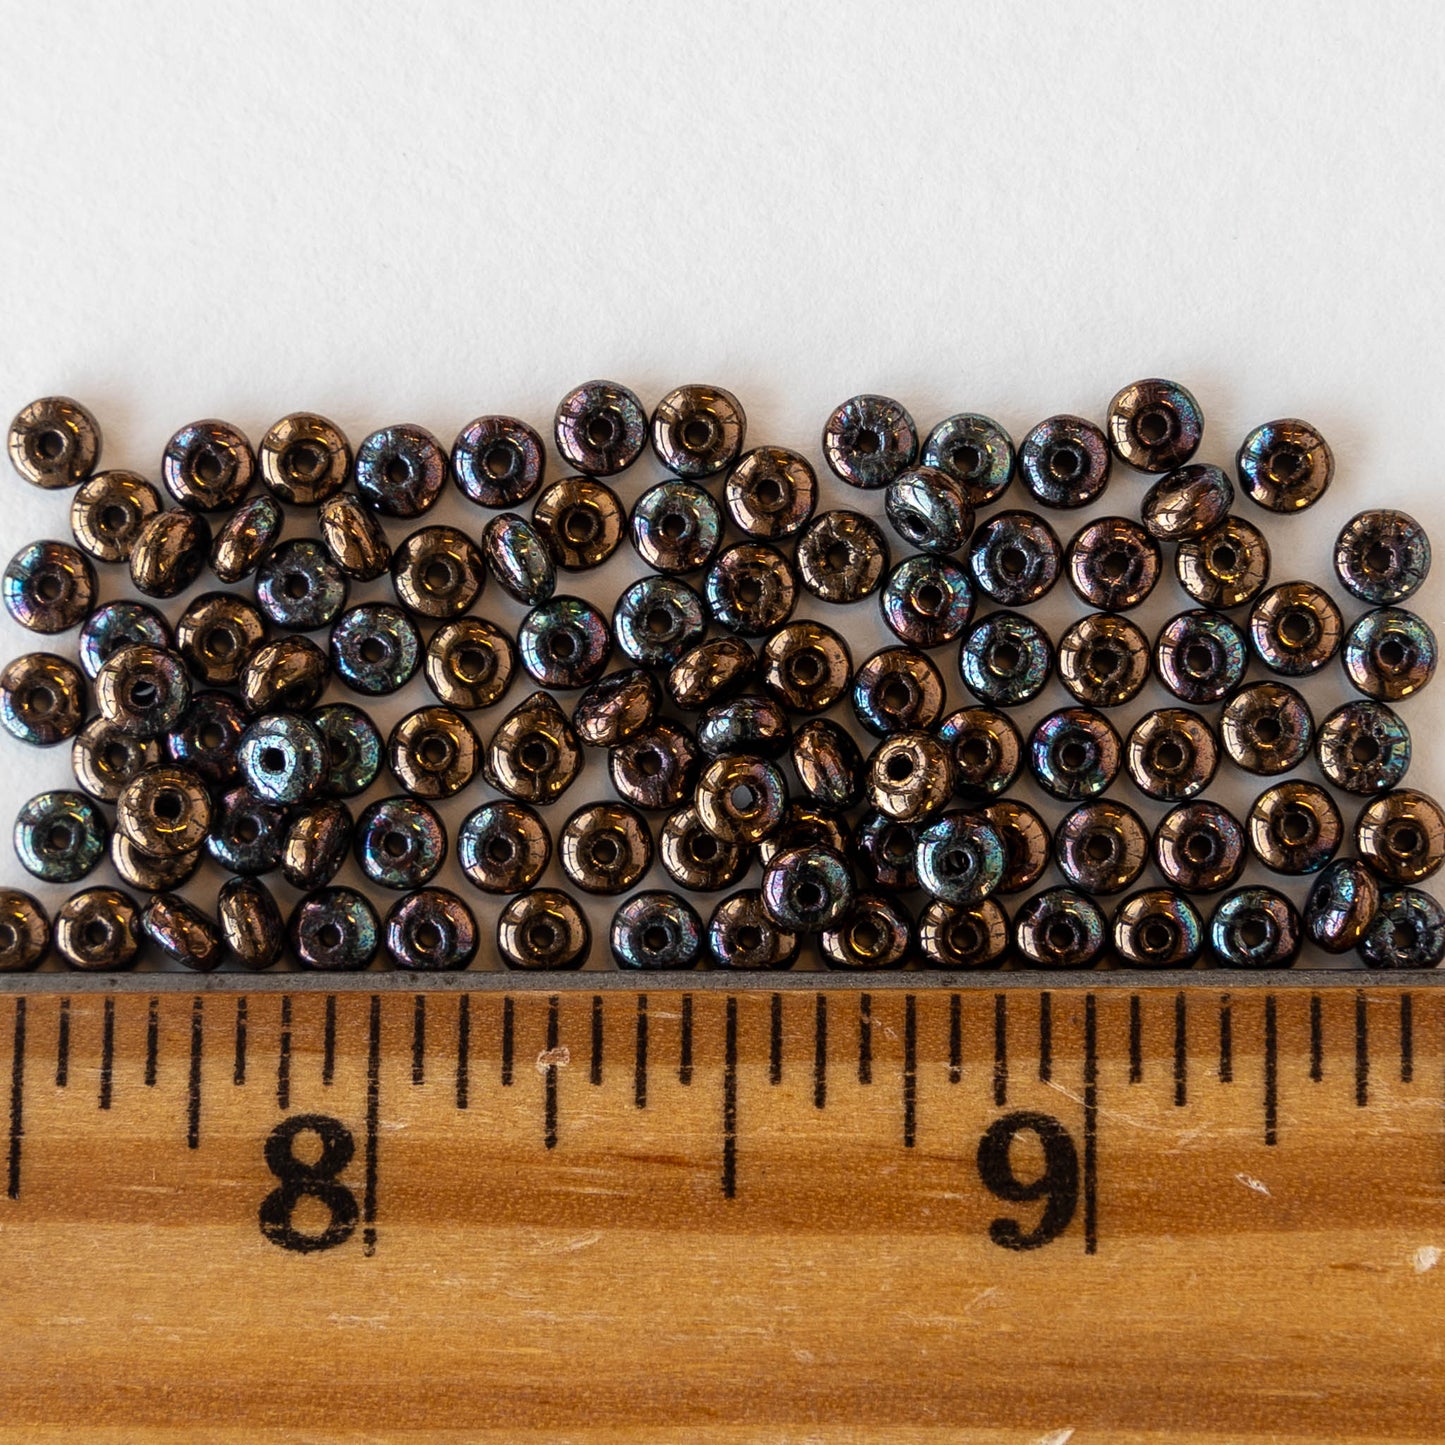 3mm Rondelle Beads - Opaque Jet Bronze - 100 Beads